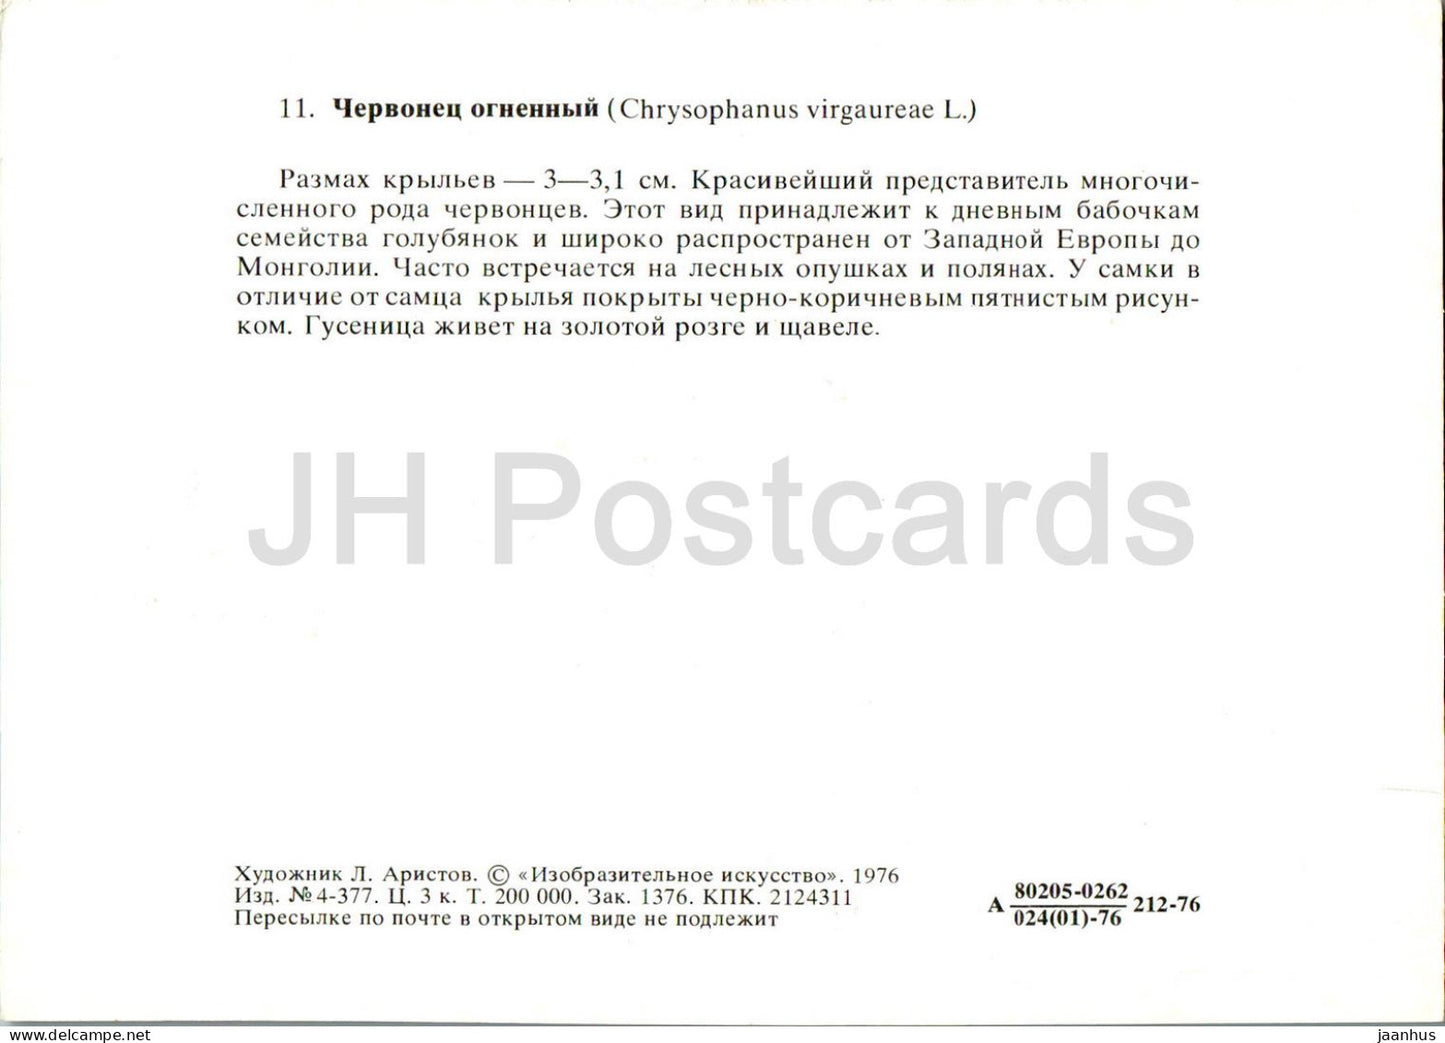 Cuivre rare - Lycaena virgaureae - papillon - papillons - 1976 - Russie URSS - inutilisé 